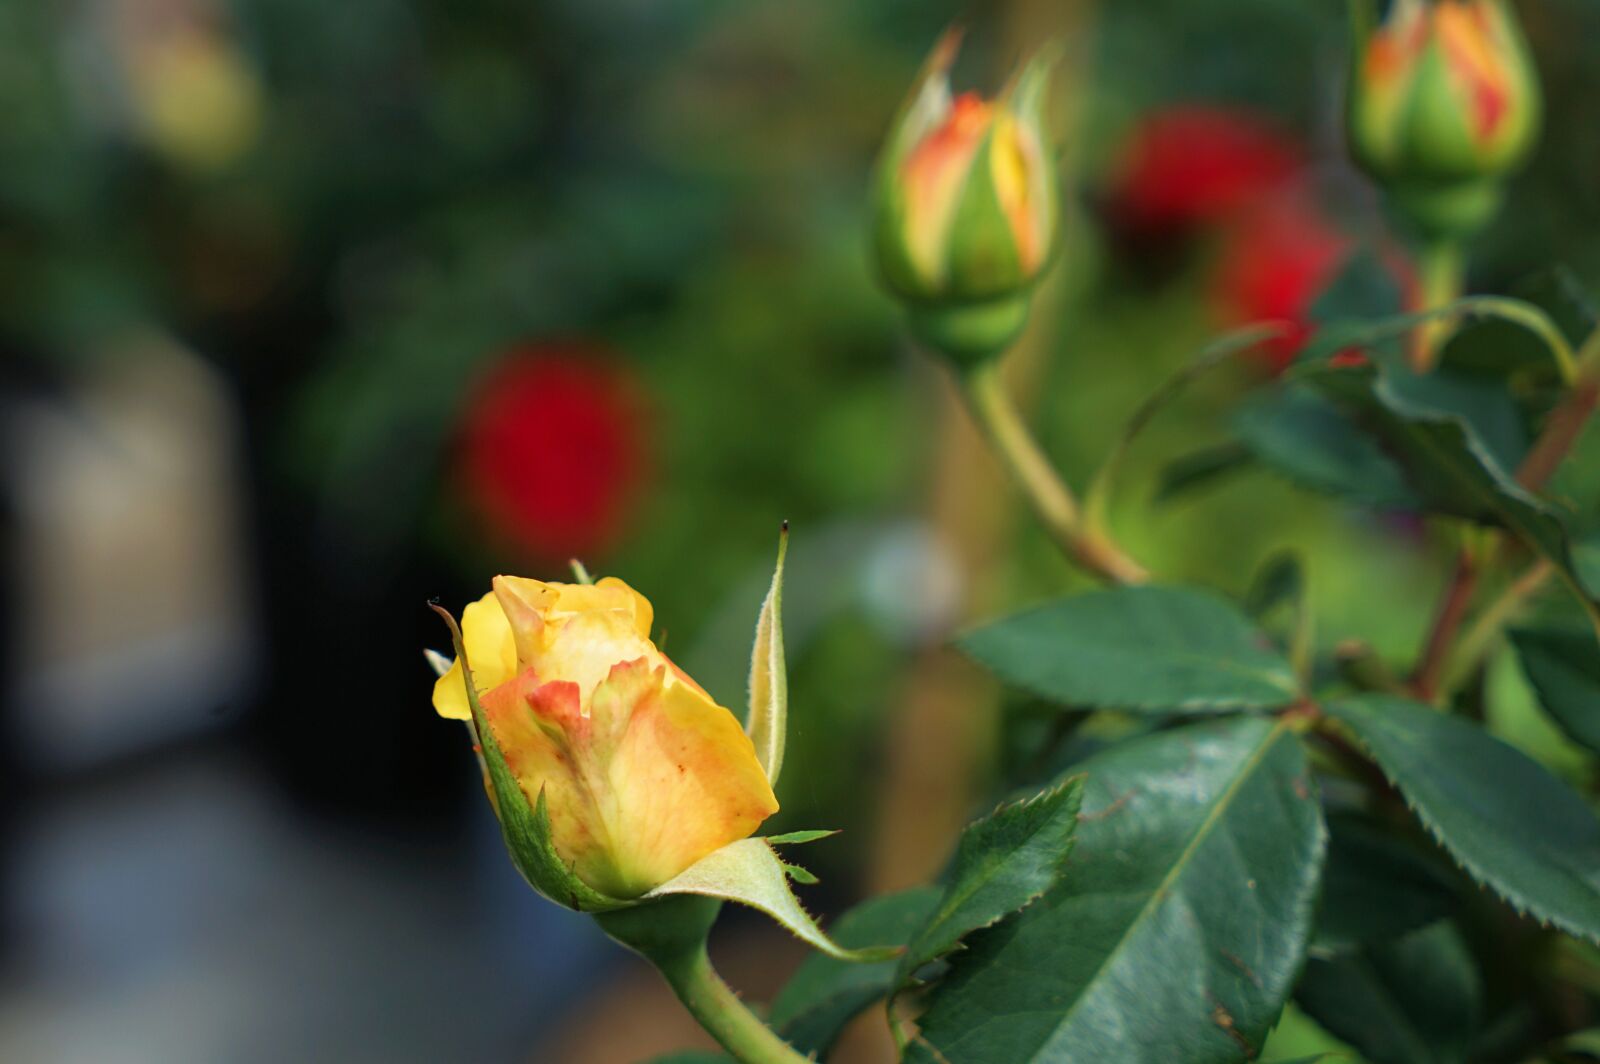 Sony Vario Tessar T* FE 24-70mm F4 ZA OSS sample photo. Rose, love, flower photography